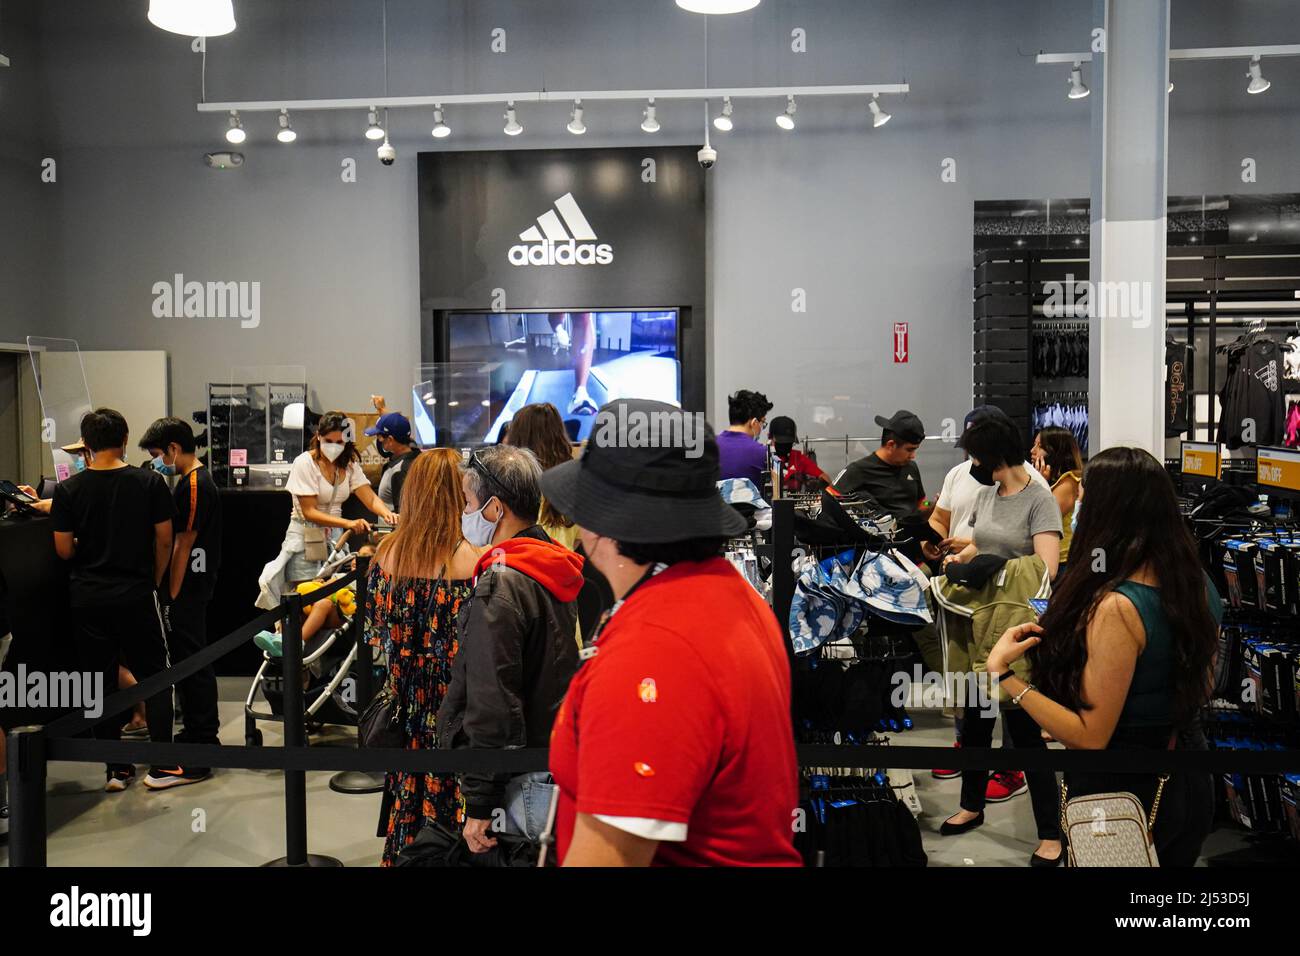 Les gens ont vu faire du shopping dans un magasin Adidas dans les magasins  d'usine d'Orange. Beaucoup de gens magasinent dans les magasins d'Orange,  pour des vêtements, des chaussures, des montres, des